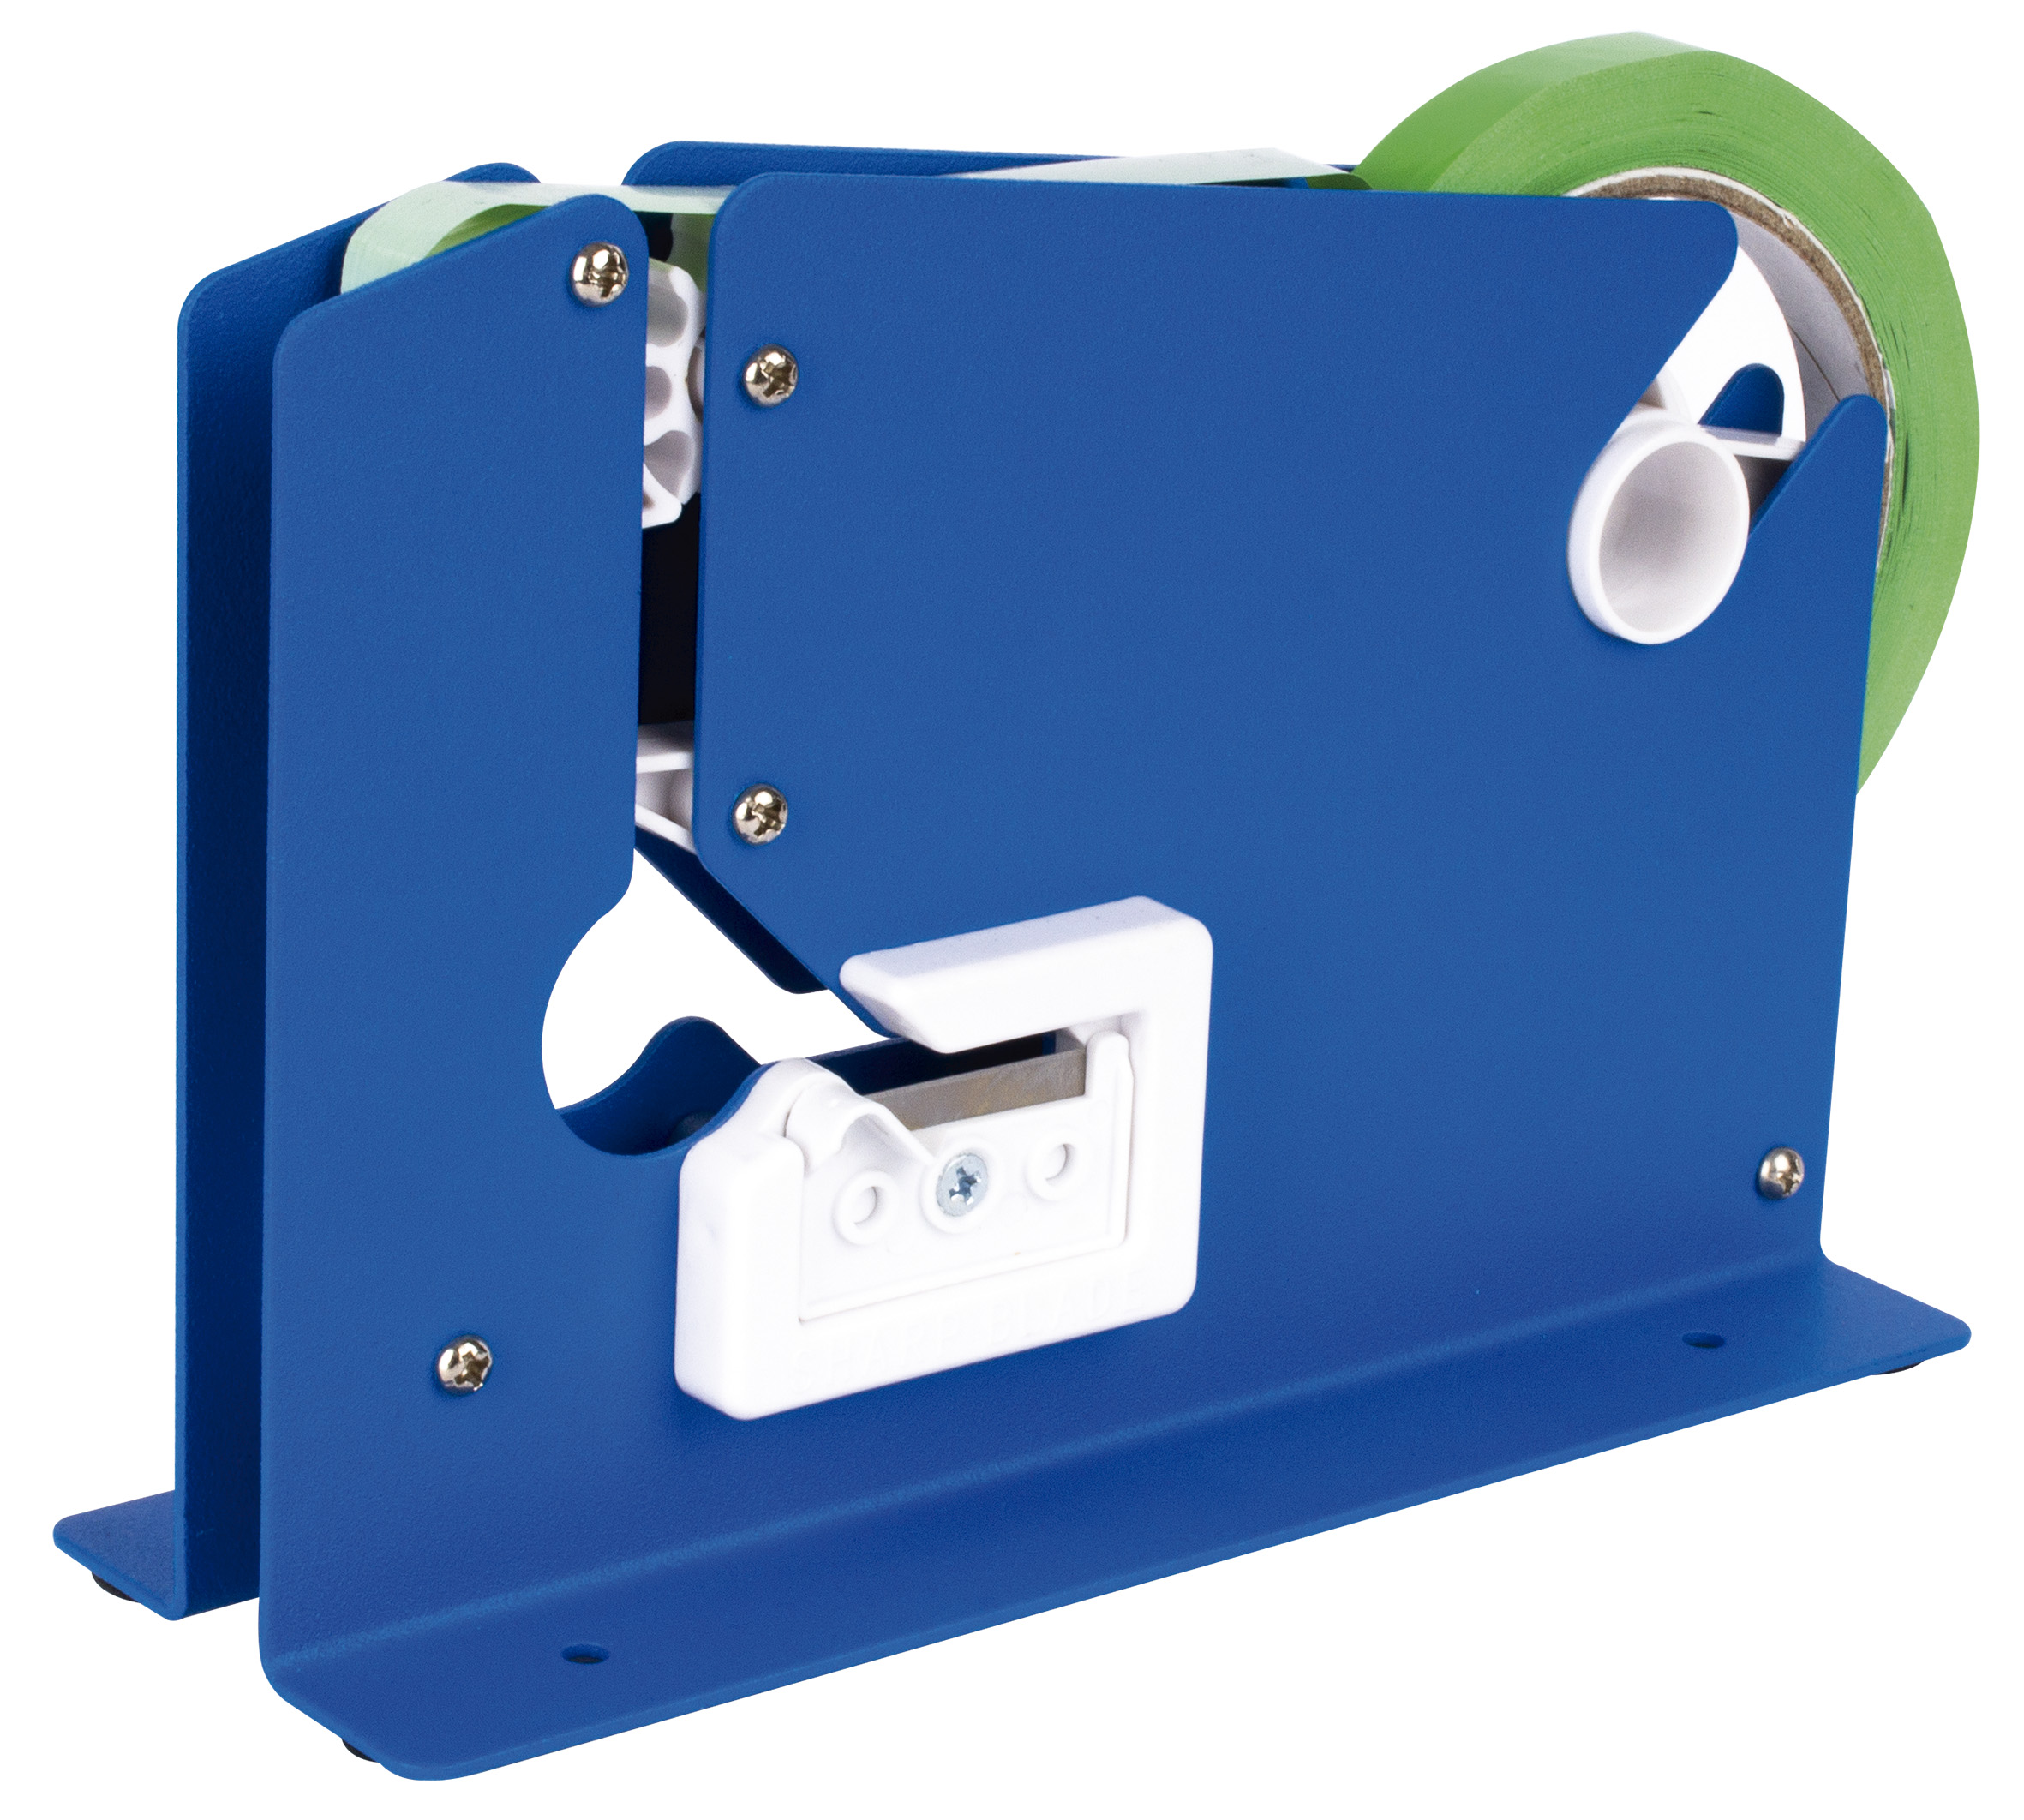 Machine de fermeture de sacs Apli - Ruban adhésif de 12 mm x 66 m - Facile à utiliser et à transporter - Idéal pour sceller les sacs rapidement et efficacement Bleu